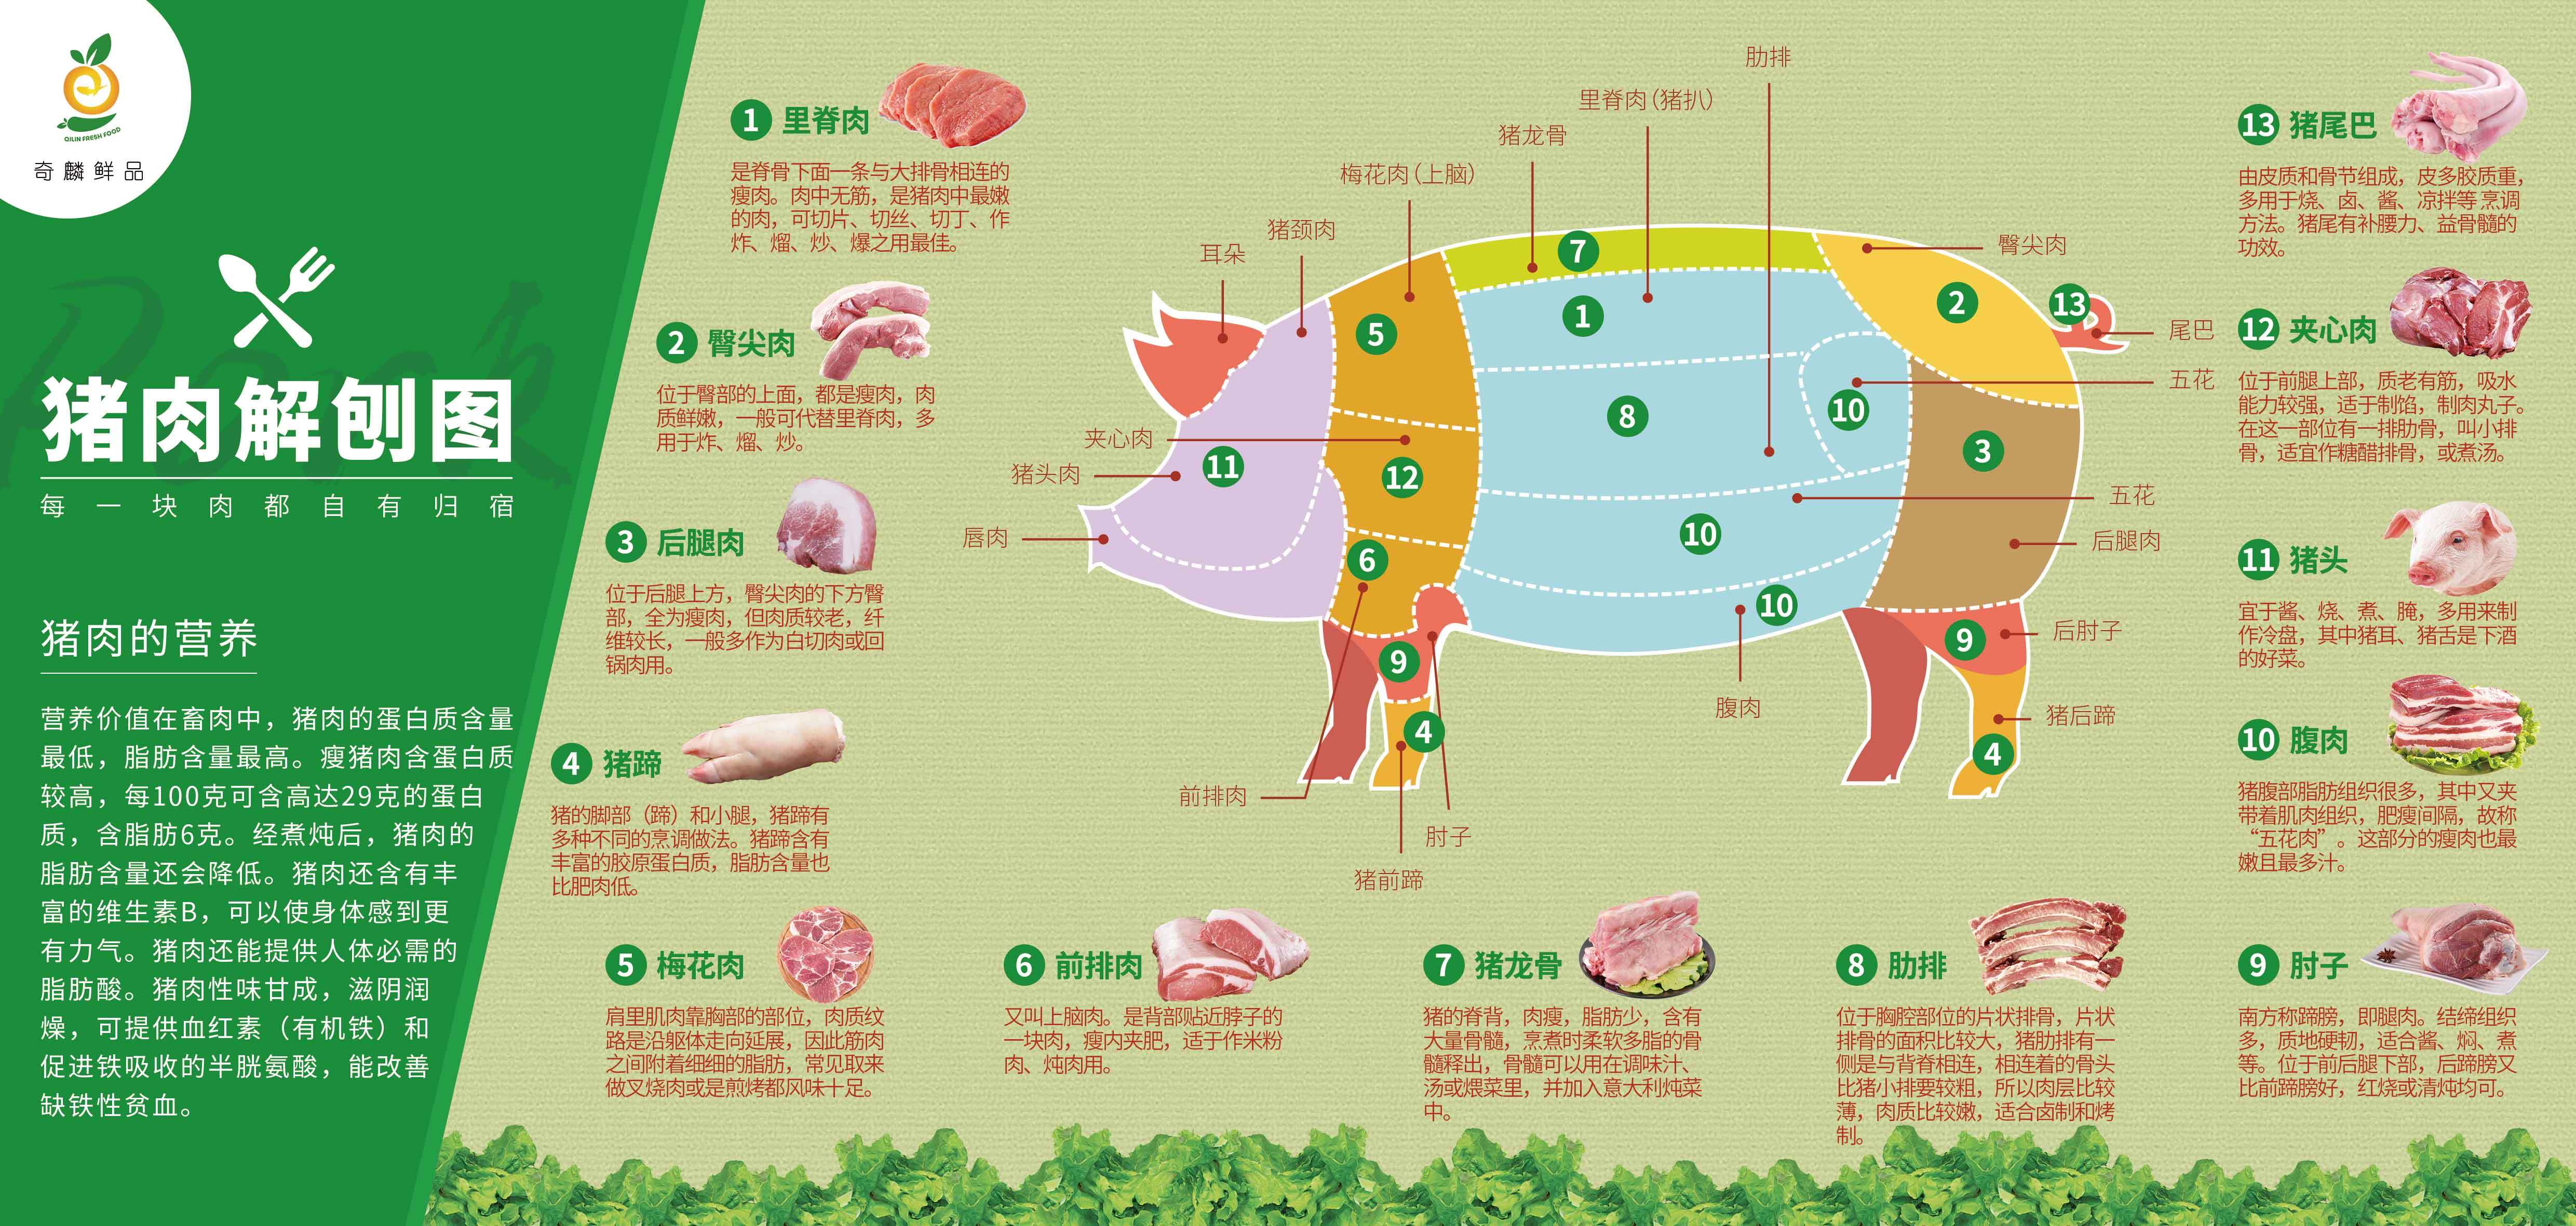 猪肉的解剖图片大全图片